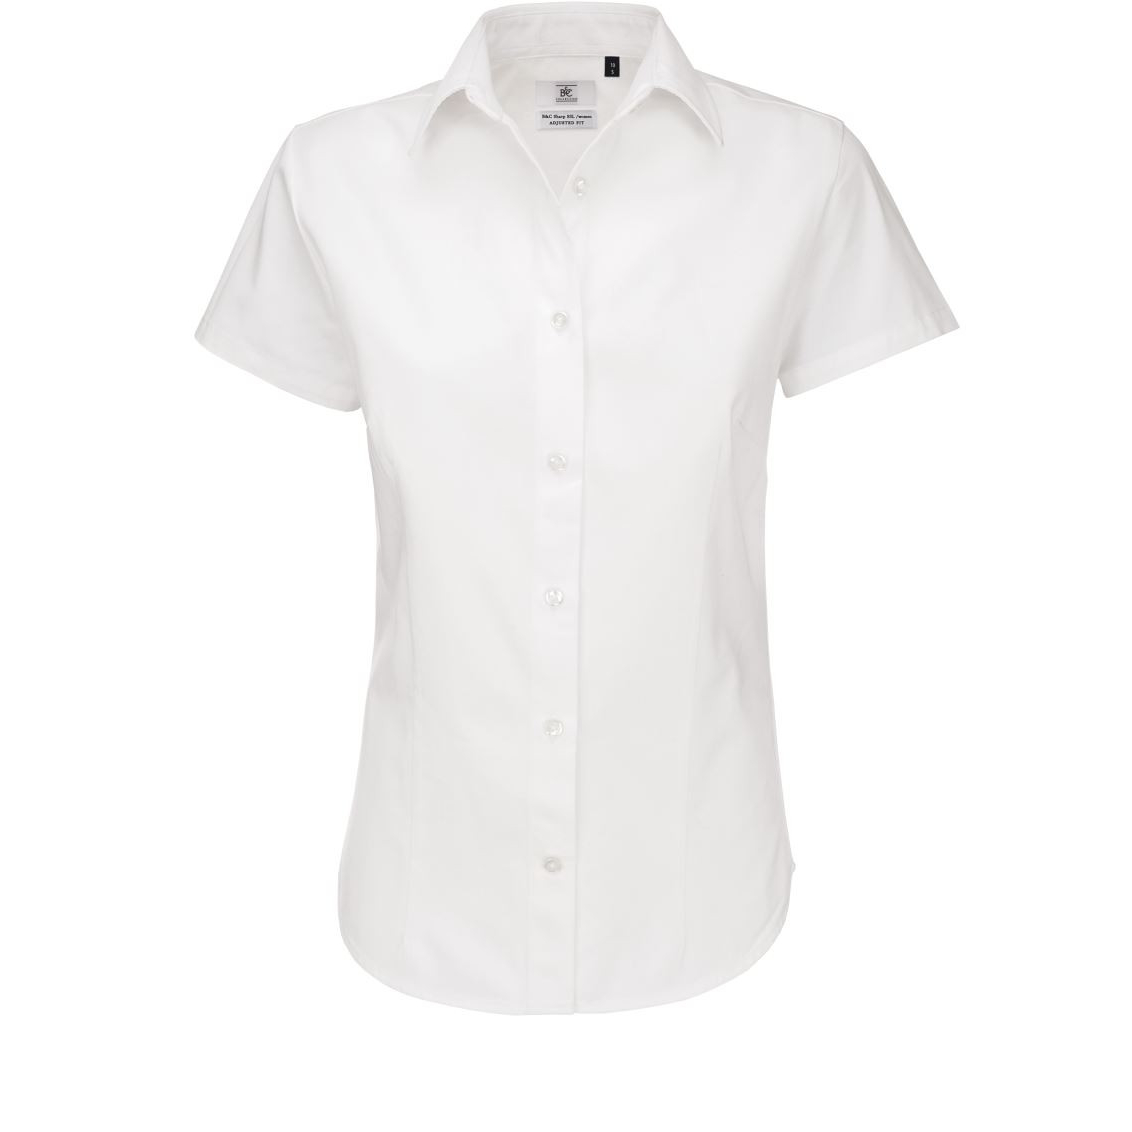 Dámská keprová košile B&C Sharp s krátkým rukávem - bílá, M